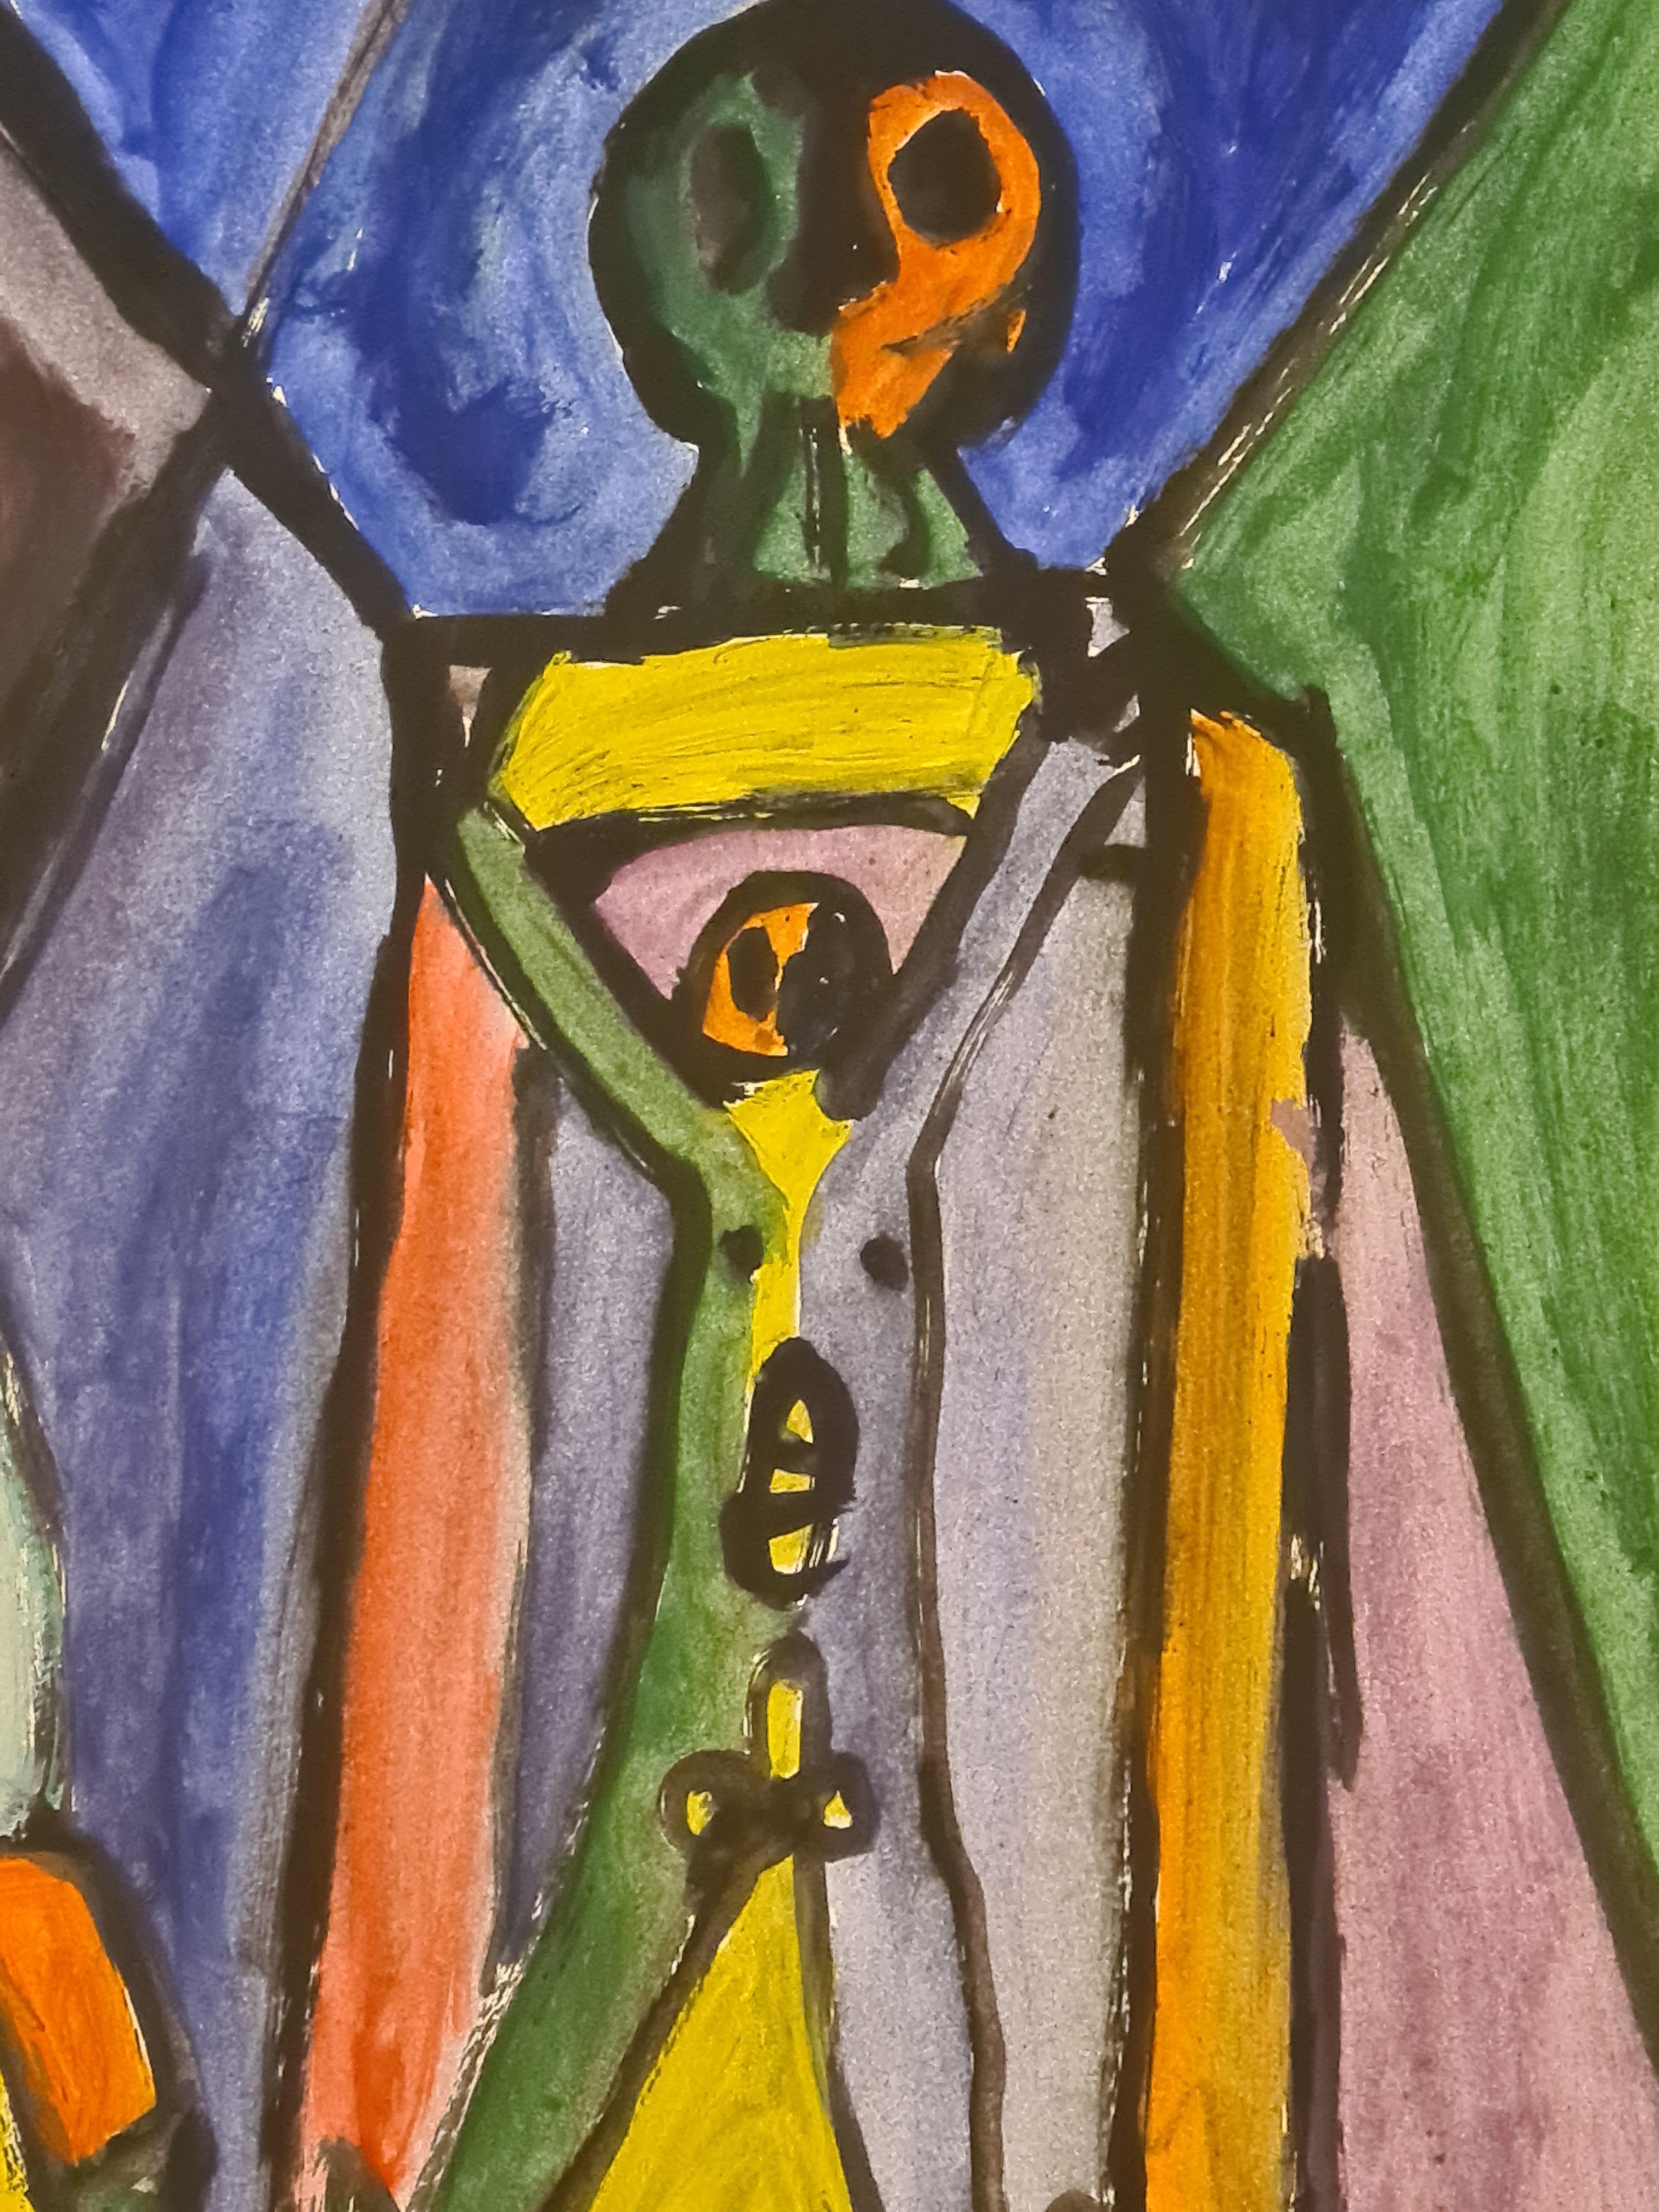 Œuvre expressionniste sur papier de la fin du XXe siècle de l'artiste français Armand Avril. Signé et daté en bas à droite.

Le tableau est plein d'éclat et de couleur avec les représentations et semble être une discussion visuelle sur l'artiste, la